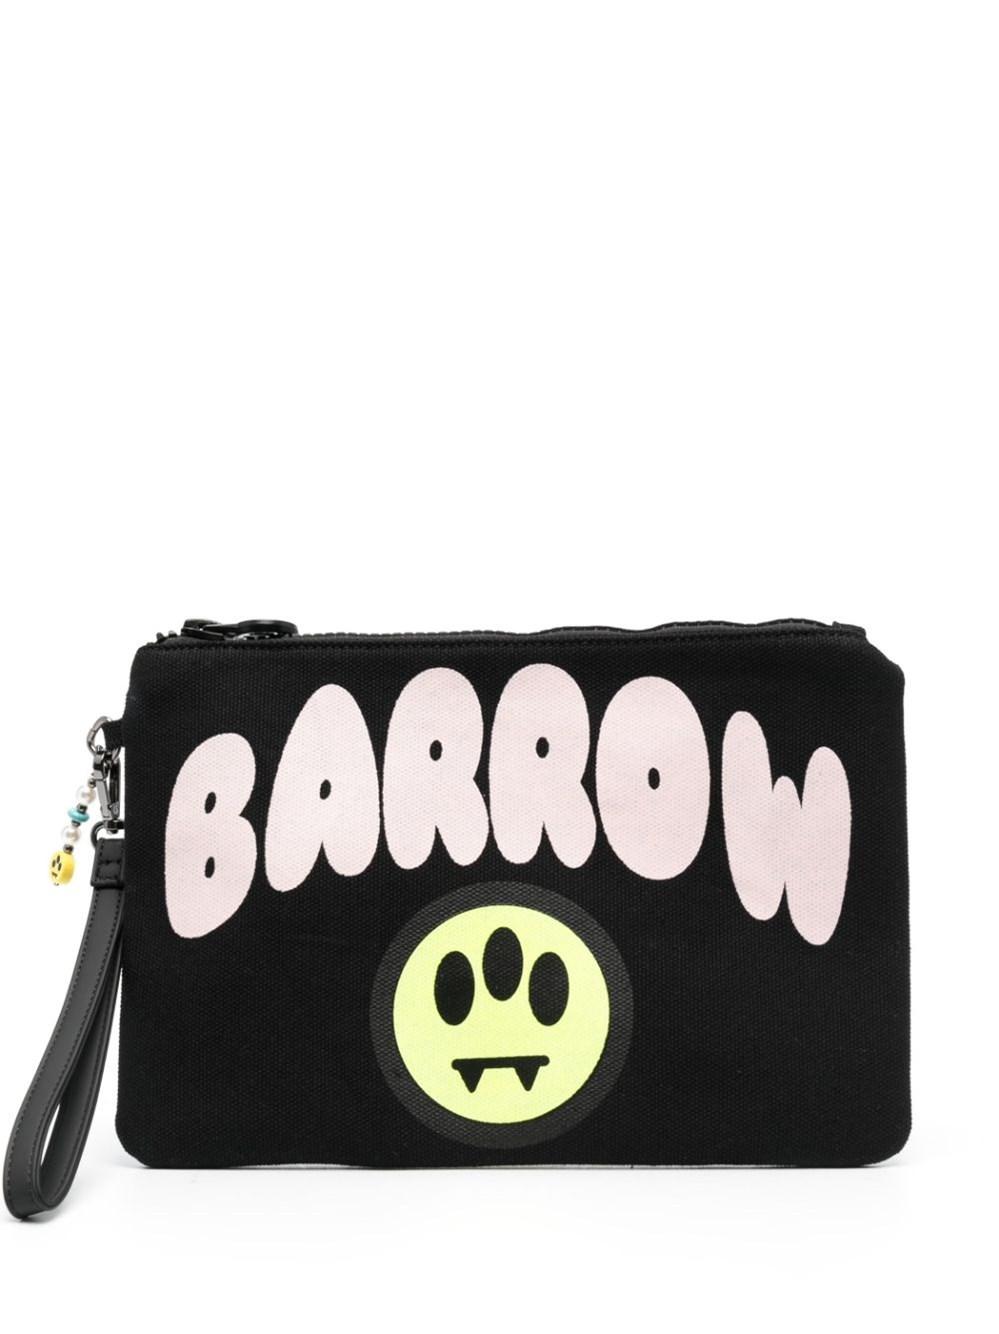 Barrow Canvas Clutch Bag in Black | Lyst